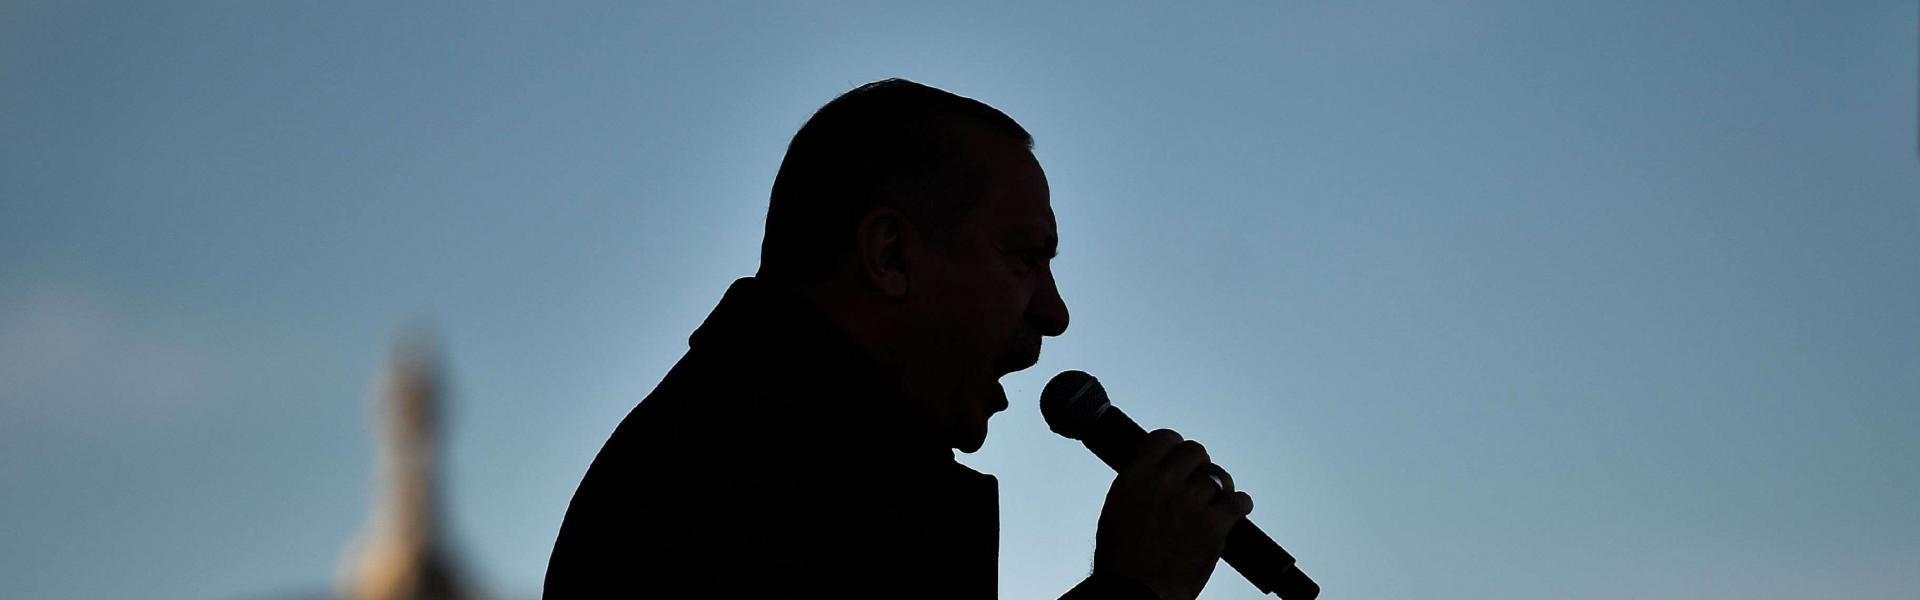 سياسة الرئيس التركي رجب طيب اردوغان تدخل تركيا في نفق مظلم